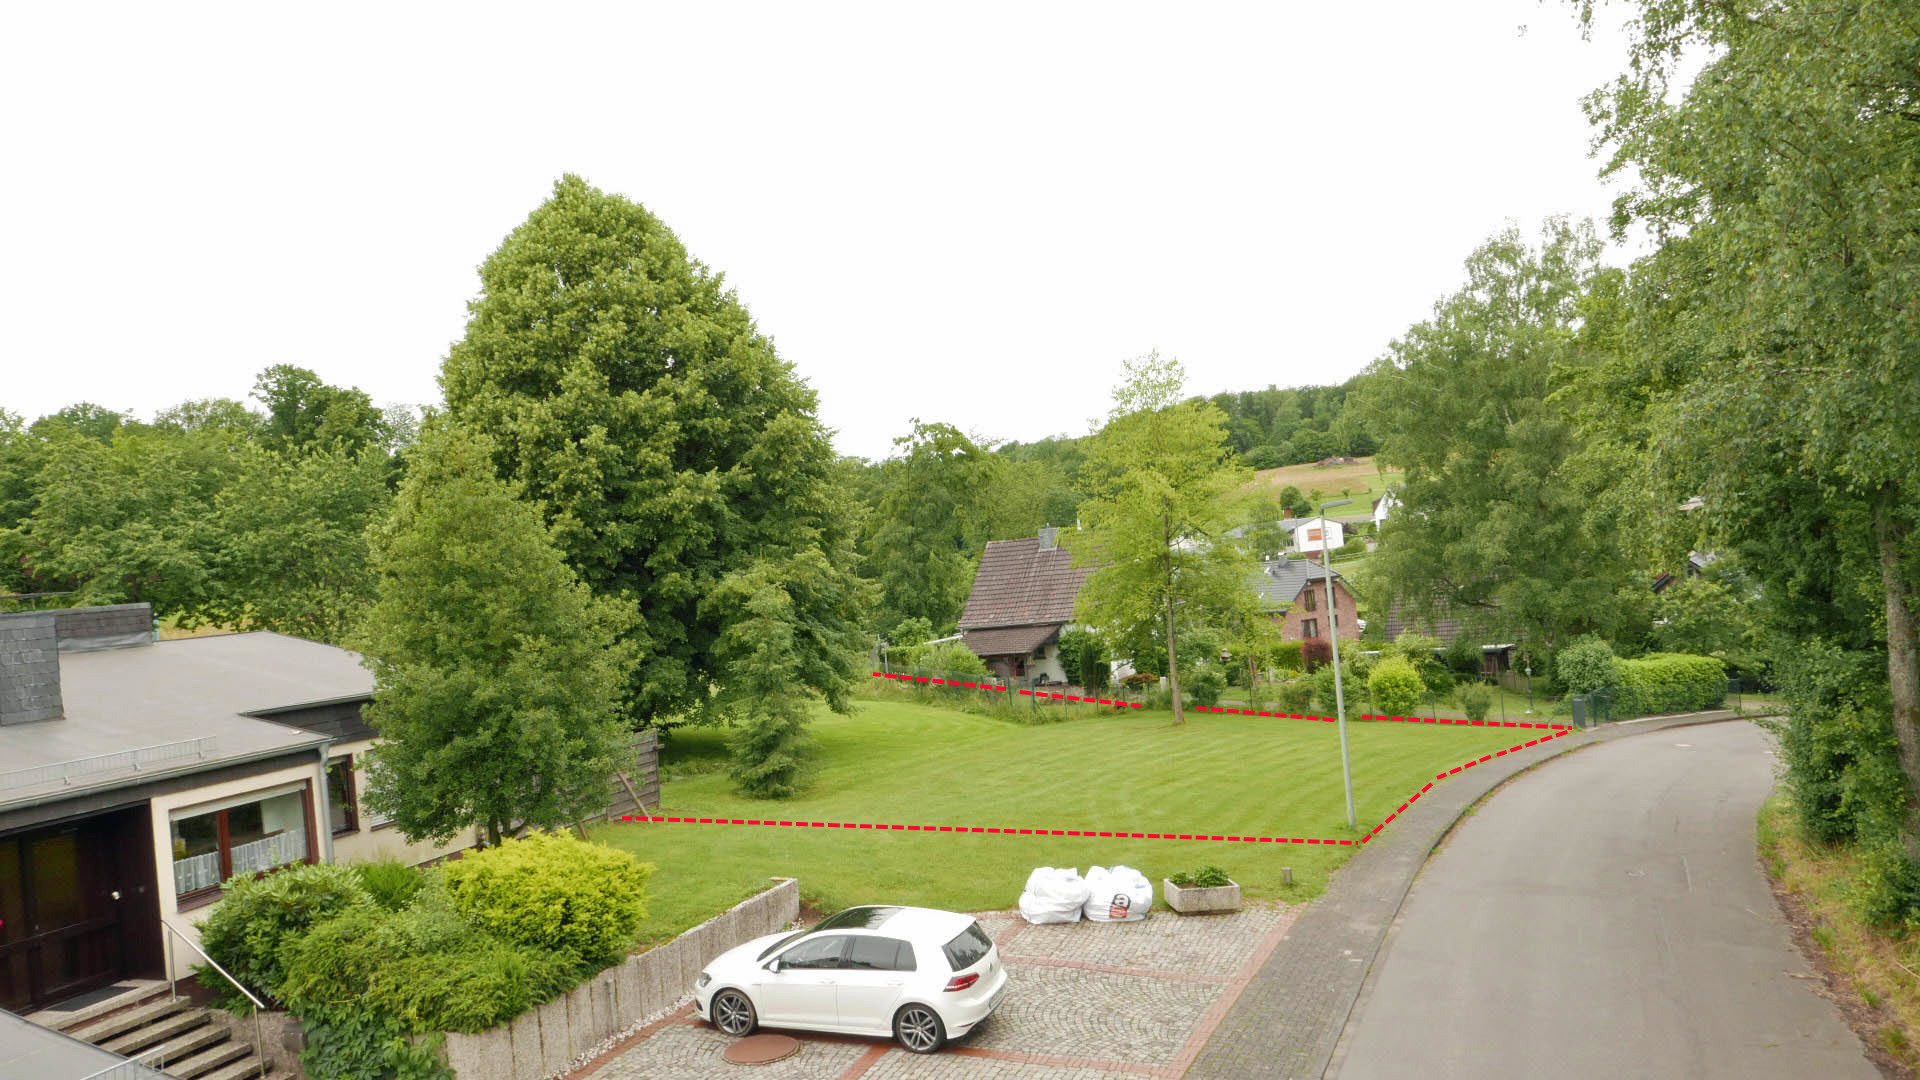 Reichshof: 1.929 m² großes Villengrundstück am Ortsrand von Brüchermühle, Blick in den Talweg Richtung Westen